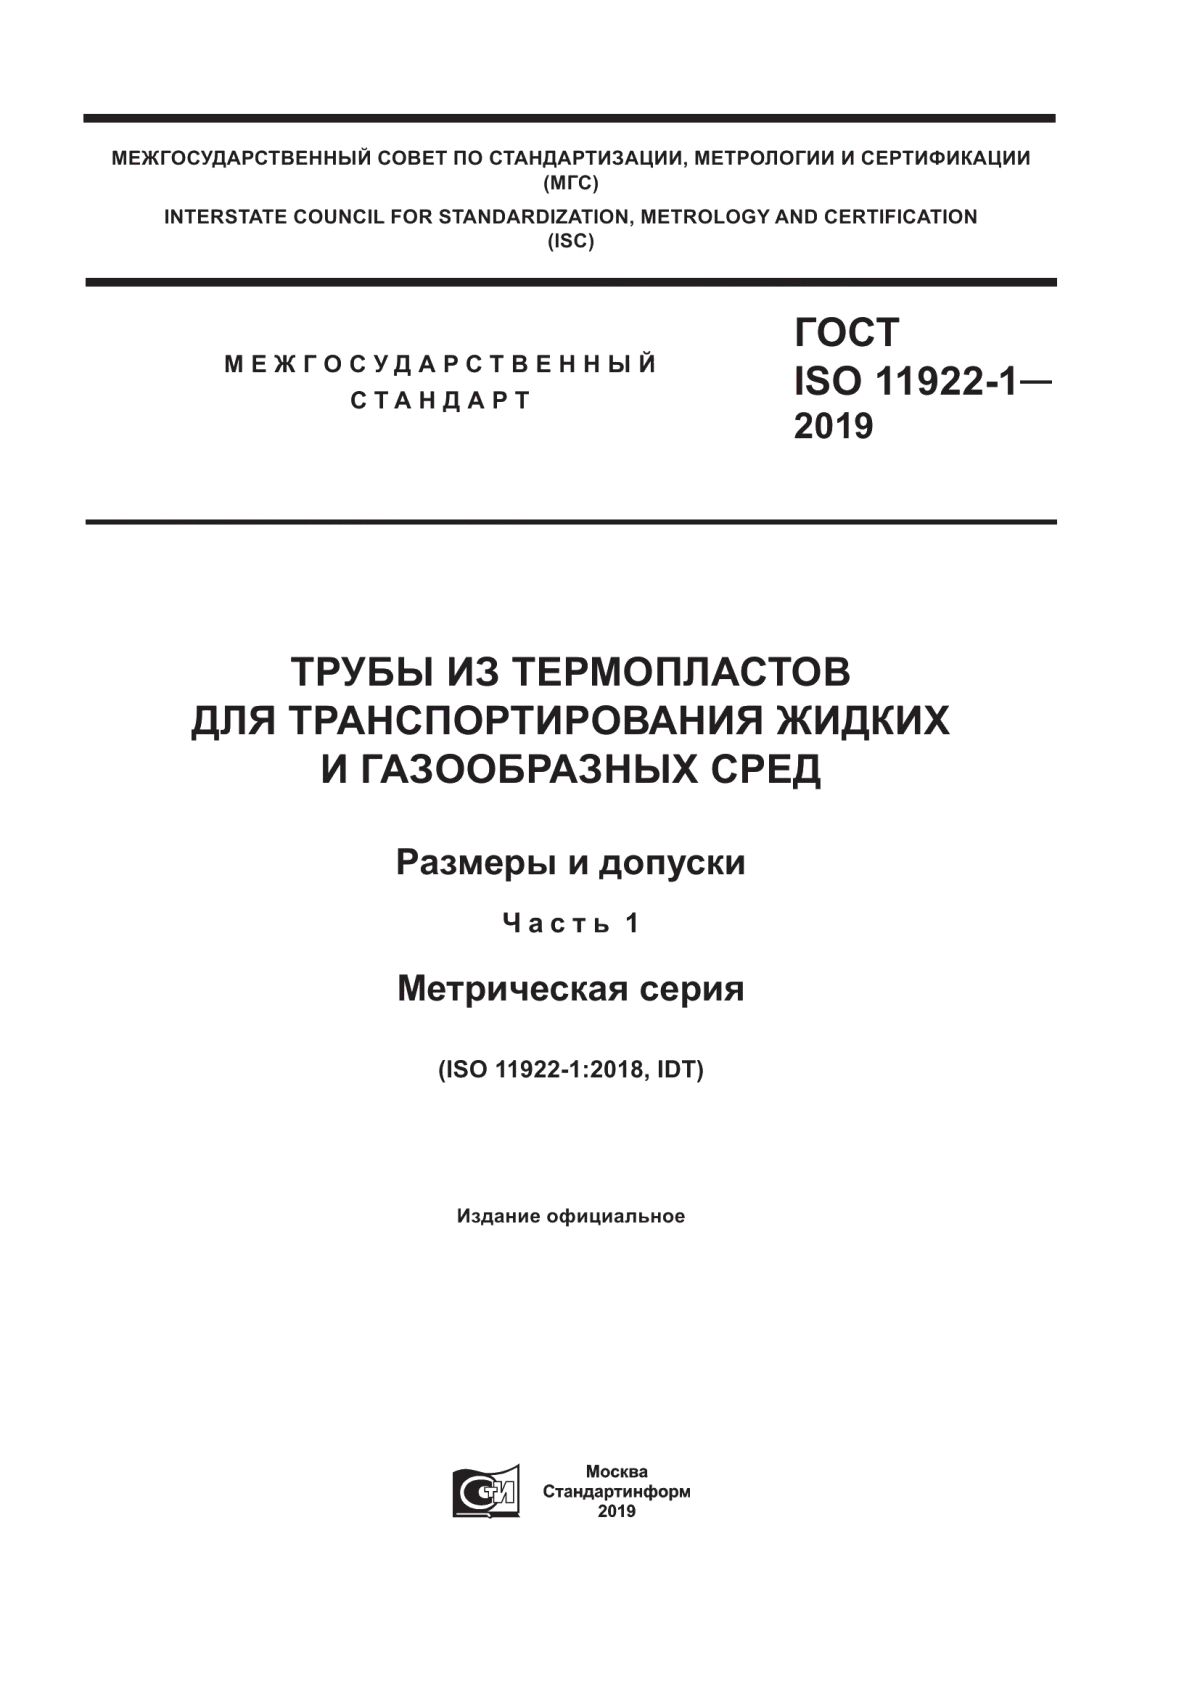 ГОСТ ISO 11922-1-2019 Трубы из термопластов для транспортирования жидких и газообразных сред. Размеры и допуски. Часть 1. Метрическая серия